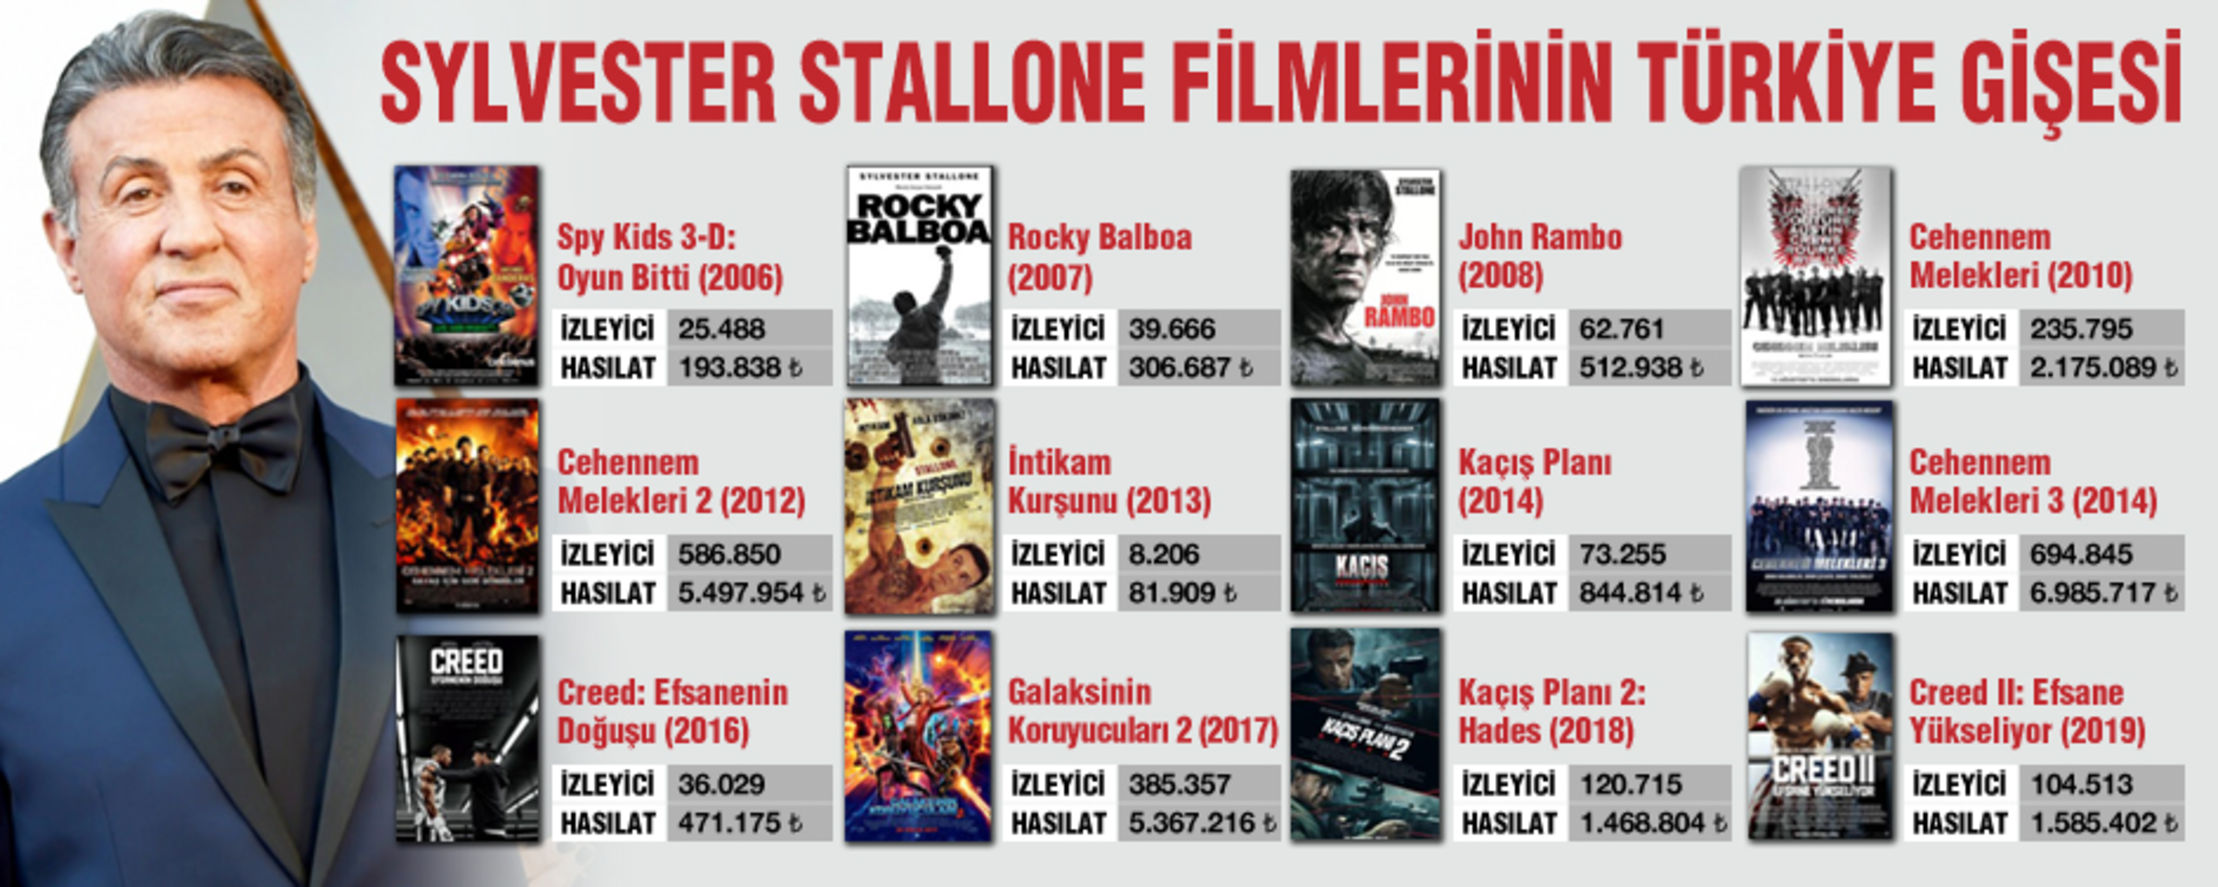 Türkiye'de sinema filmlerinin sayısal verileri tutulmaya başlandığı 2005'ten bu yana Sylvester Stallone filmleri...